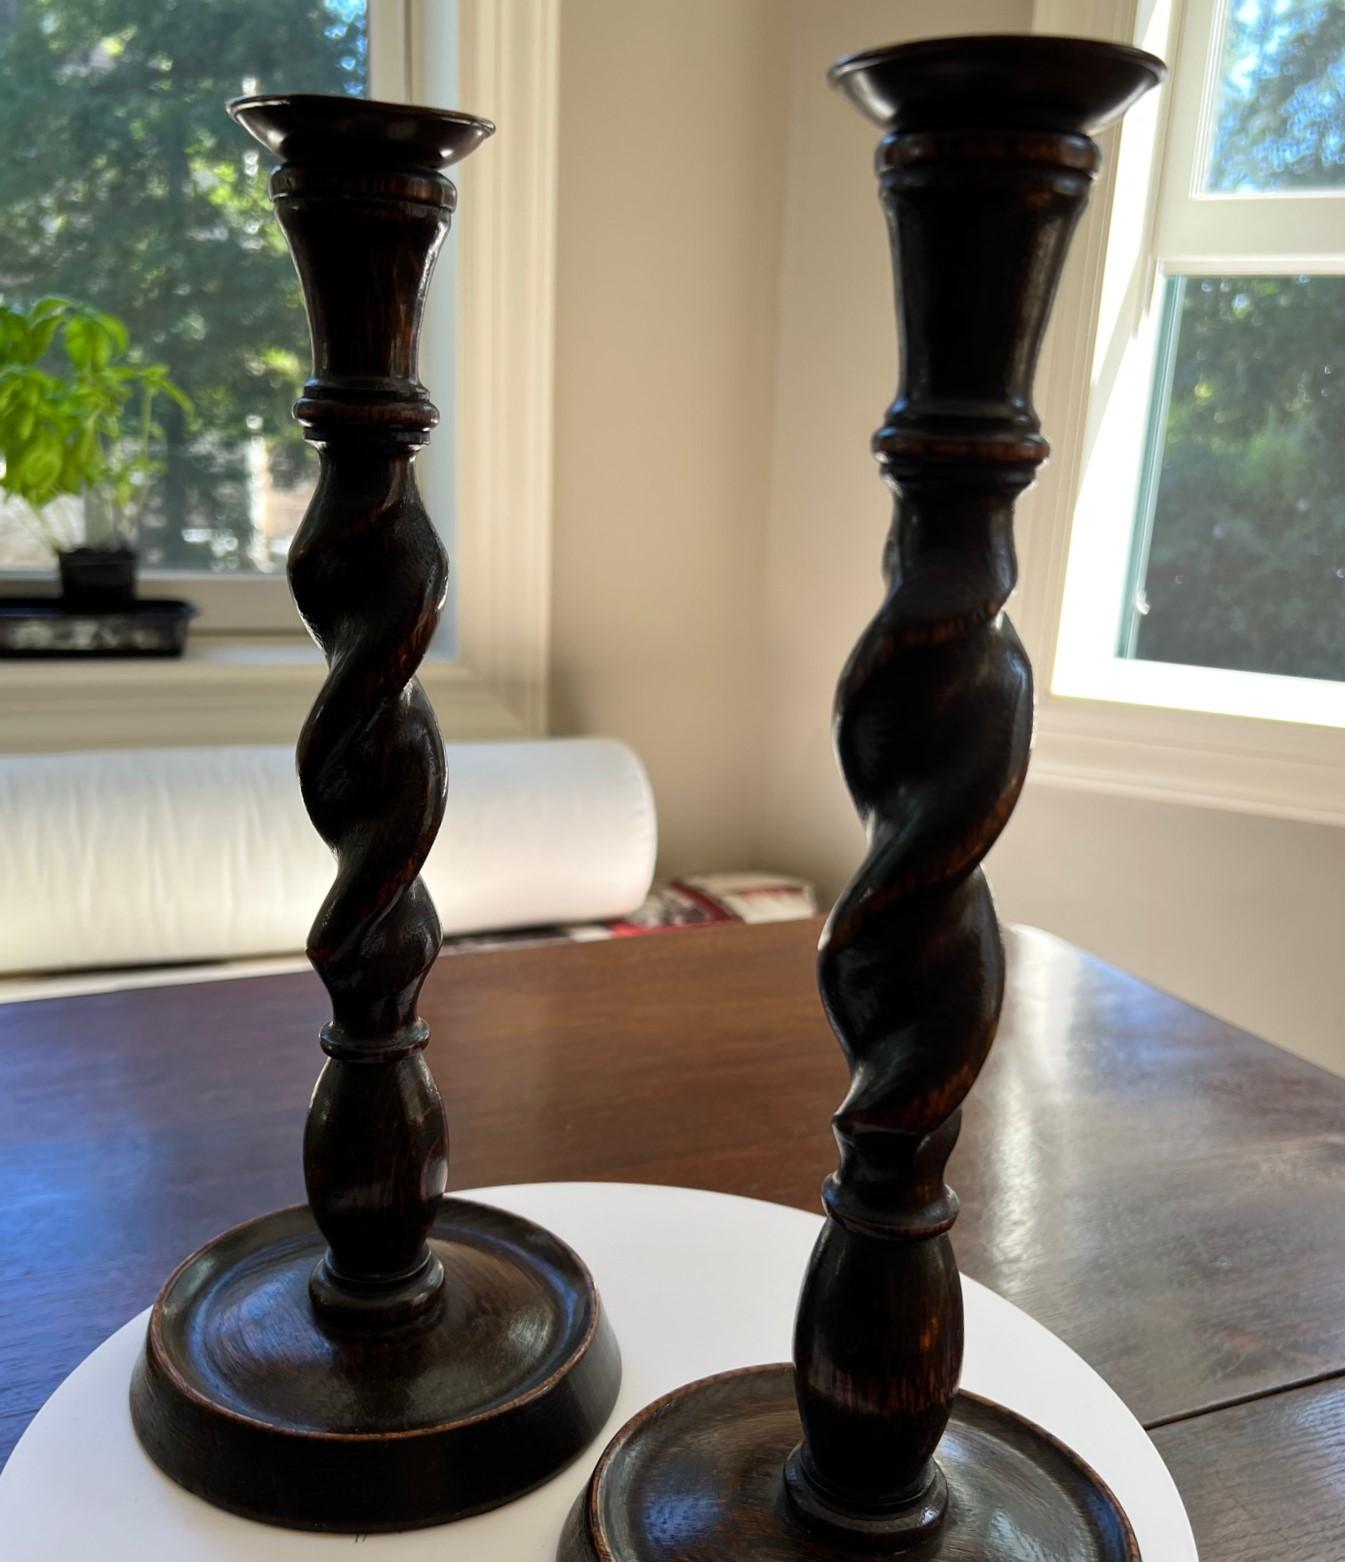 Ein Paar englischer Gerstenkorn-Kerzenhalter aus der Zeit des Jacobean Revival.  Sie sind ein wunderbares Geschenk für einen Sammler englischer Antiquitäten. Was für eine hübsche Ergänzung für eine Landhauseinrichtung, eine Bibliothek oder ein